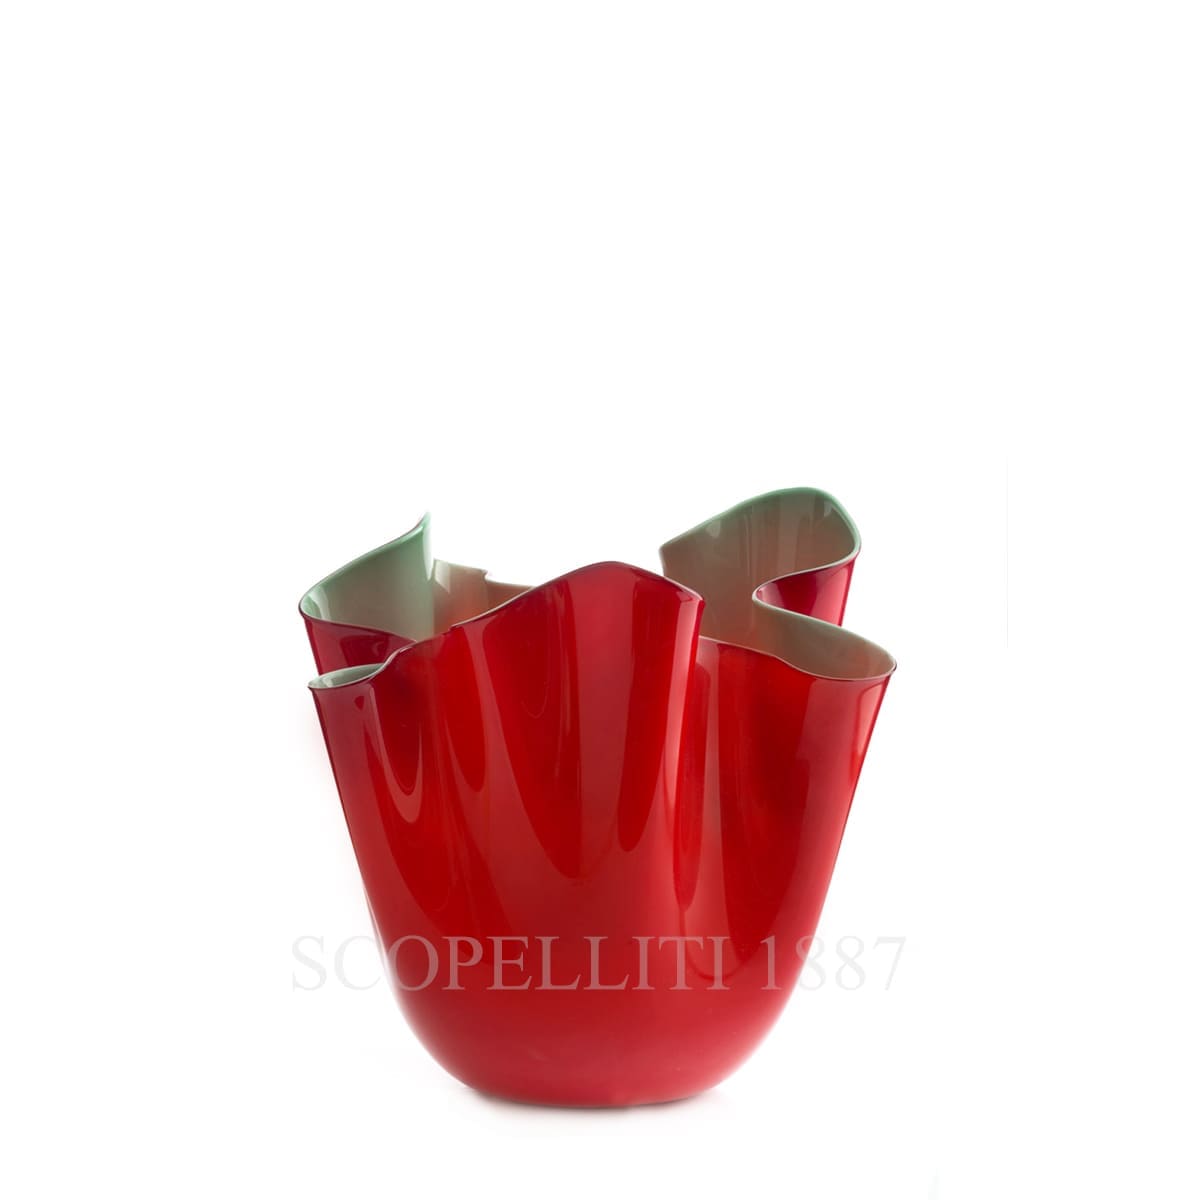 Venini Fazzoletto Vase small red/apple green 700.04